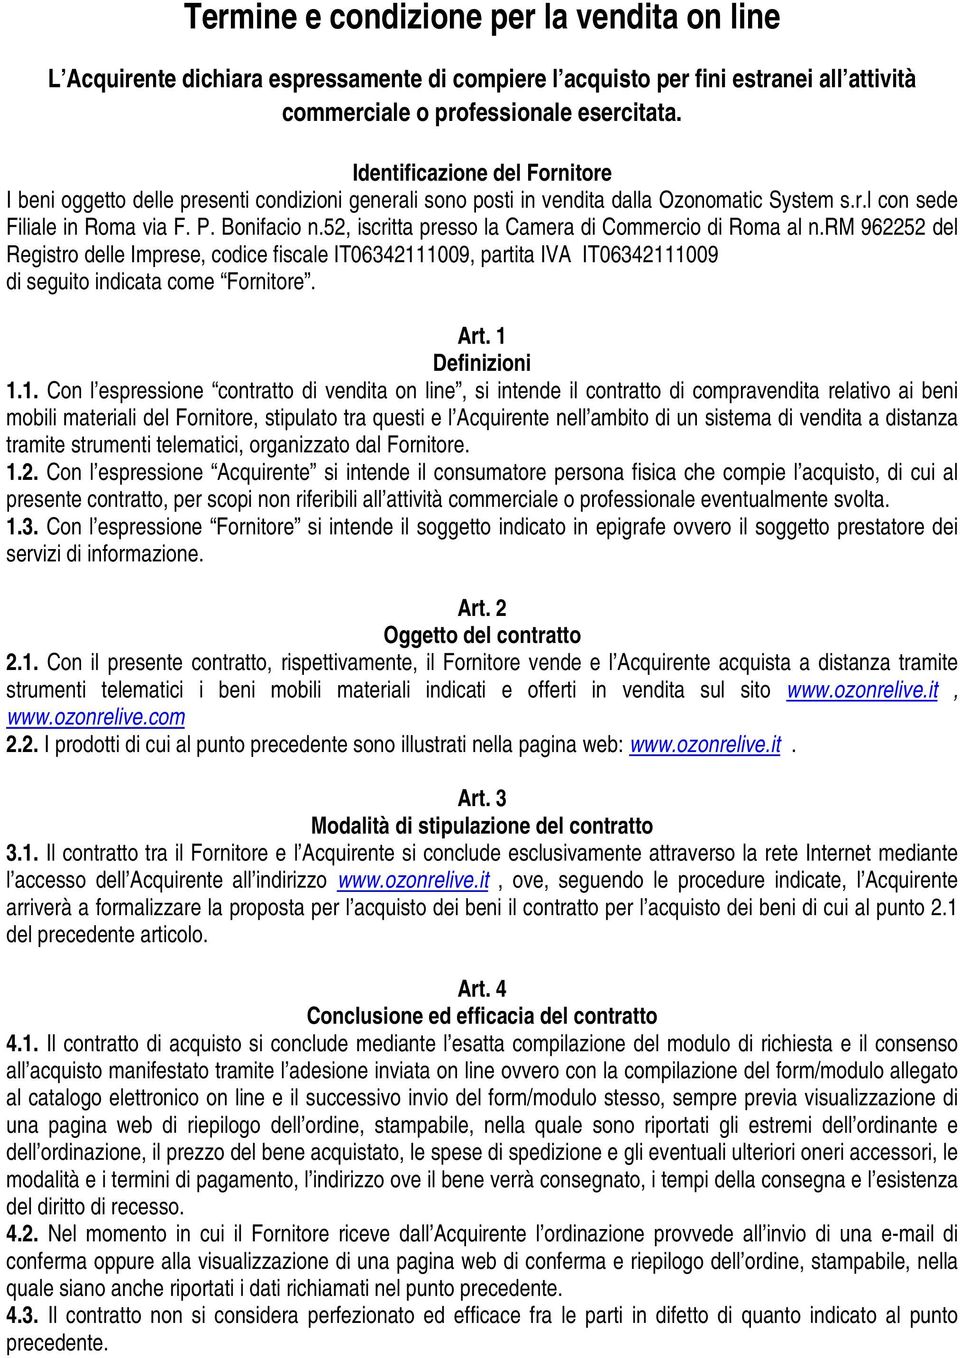 52, iscritta presso la Camera di Commercio di Roma al n.rm 962252 del Registro delle Imprese, codice fiscale IT06342111009, partita IVA IT06342111009 di seguito indicata come Fornitore. Art.